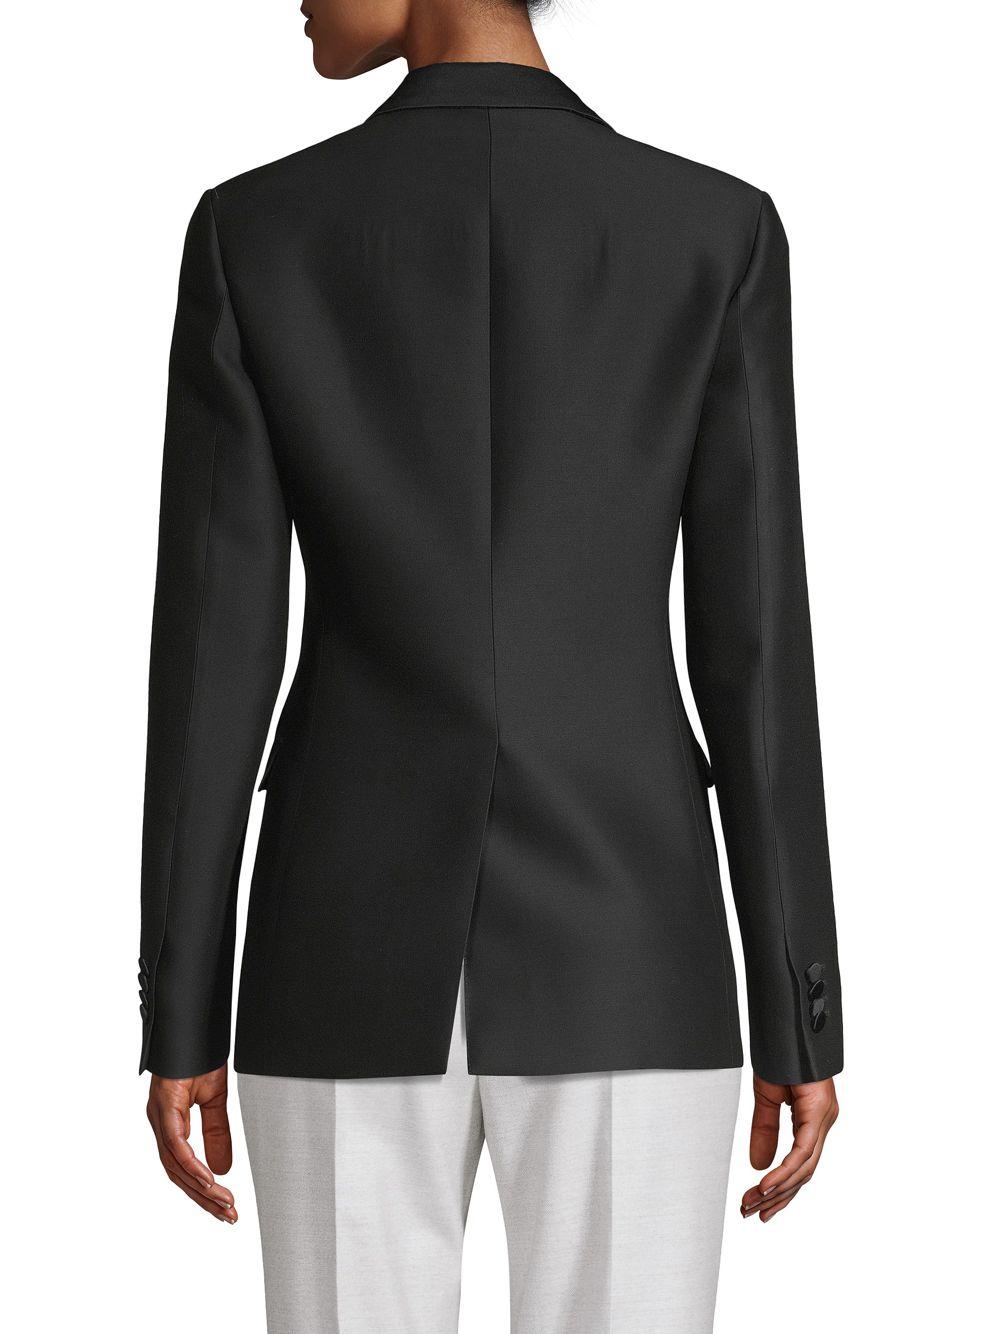 Valentino Wool & Silk Blazer in Black - Lyst